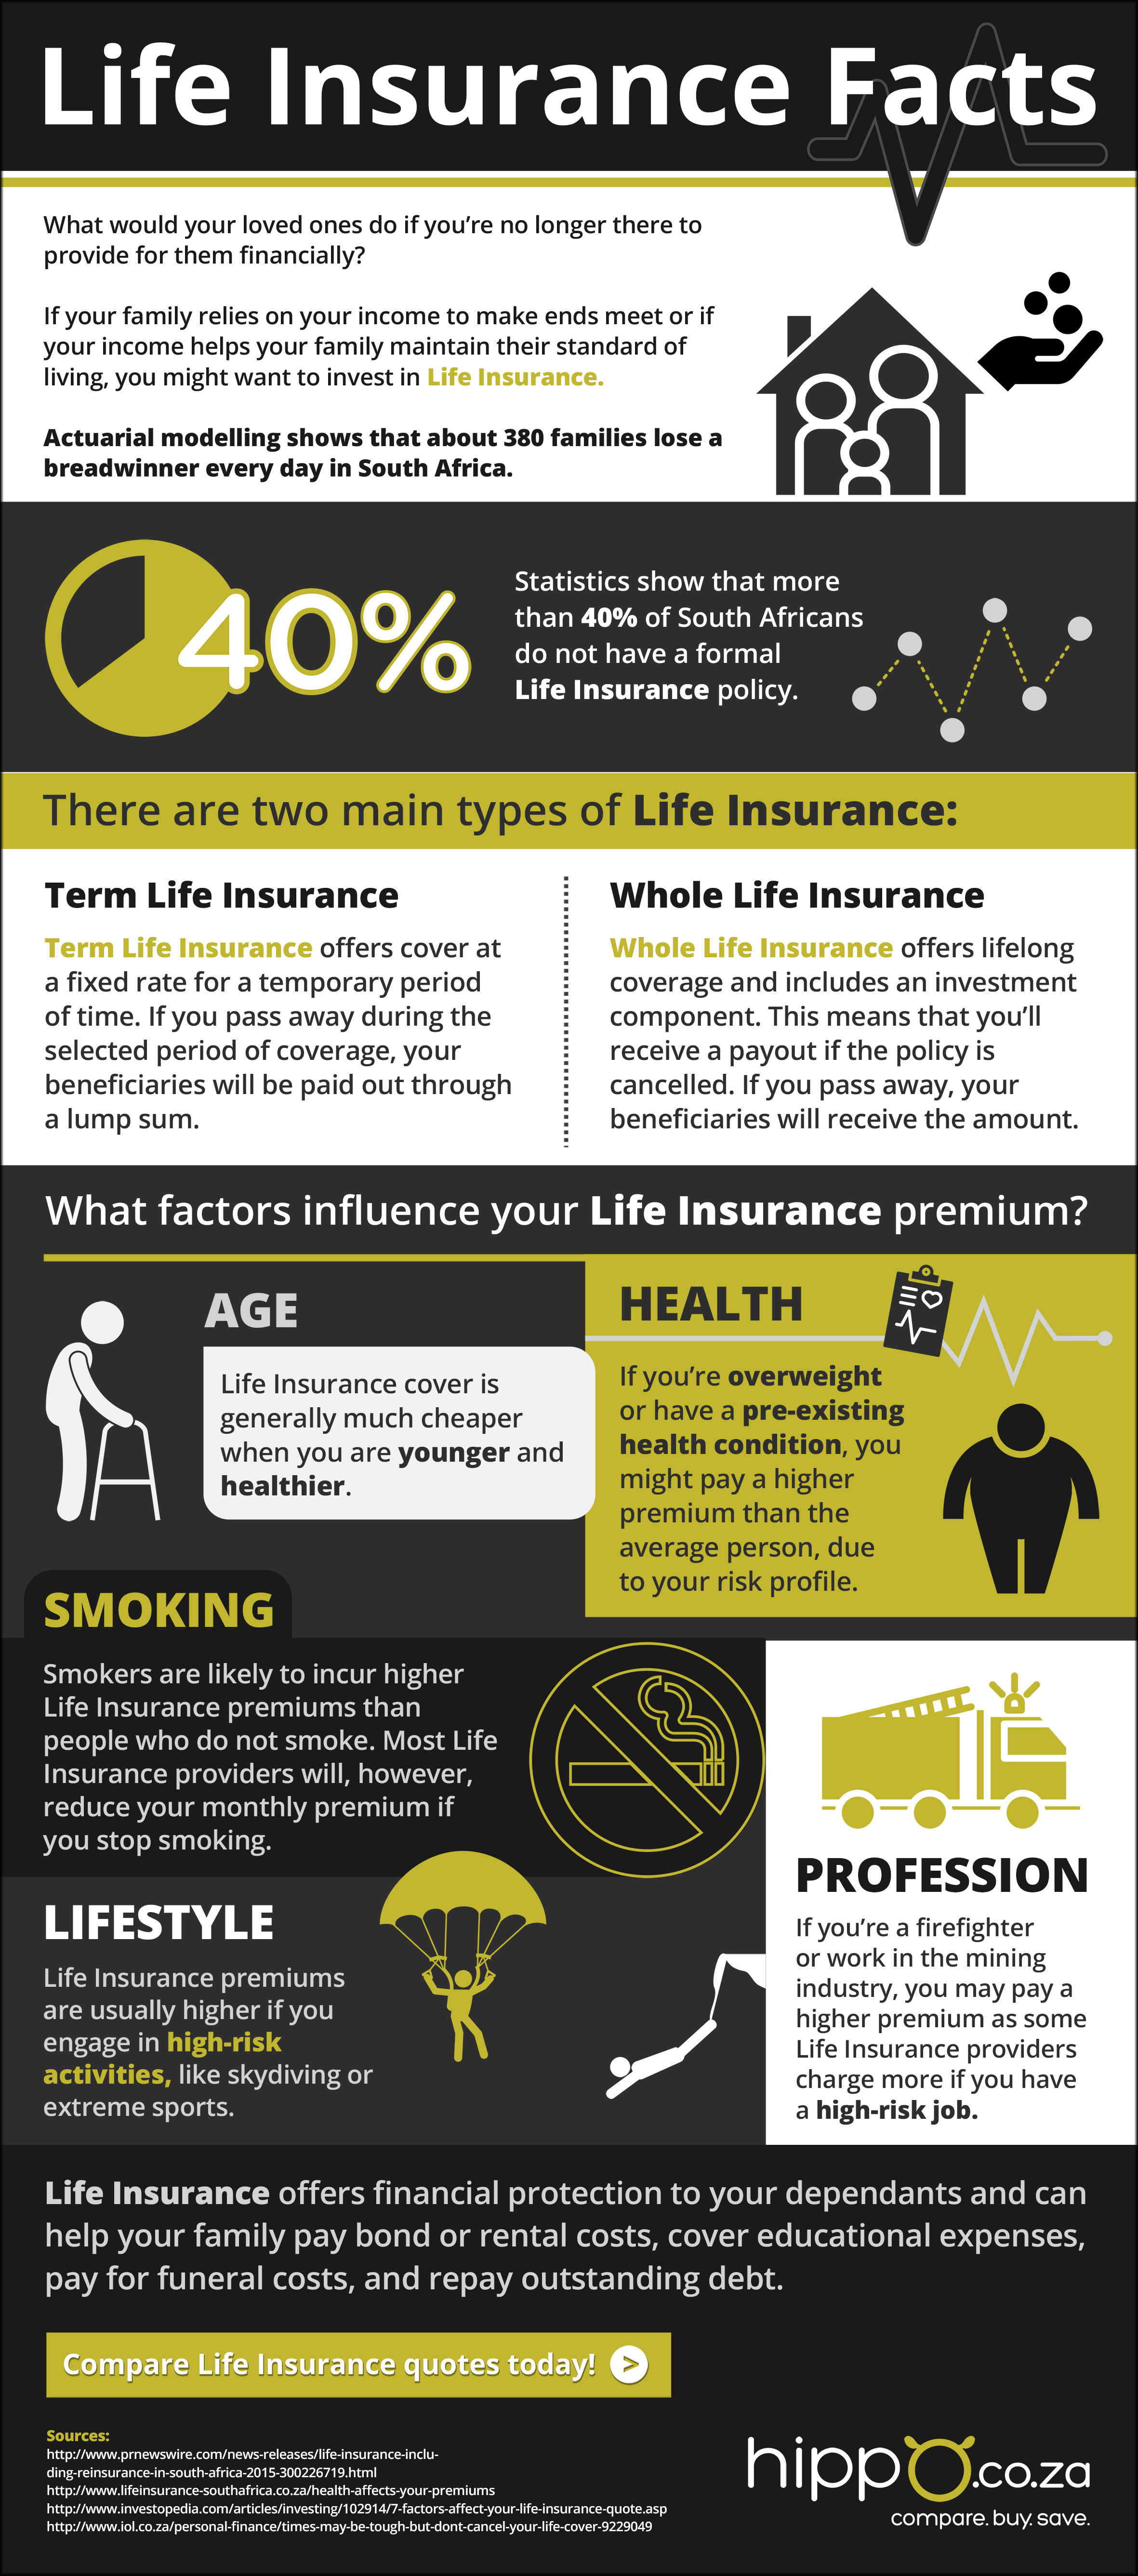 Why do I Need Life Insurance | Life Insurance Blog | Hippo.co.za | 